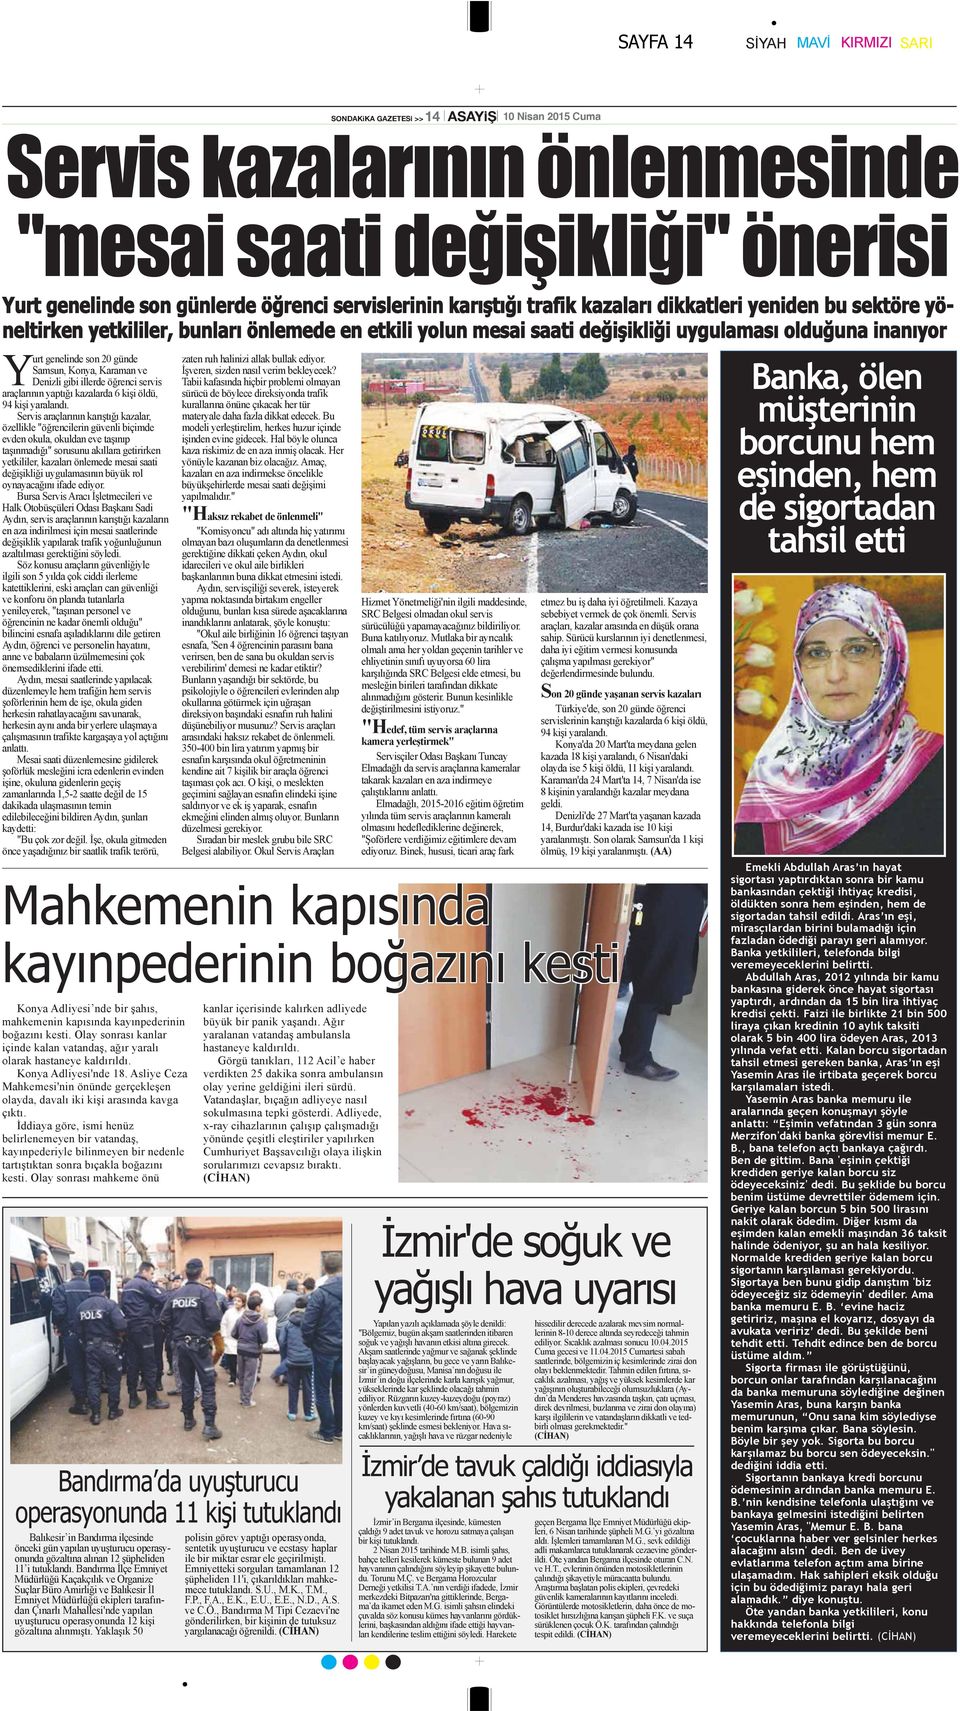 Samsun, Konya, Karaman ve Denizli gibi illerde öğrenci servis araçlarının yaptığı kazalarda 6 kişi öldü, 94 kişi yaralandı.